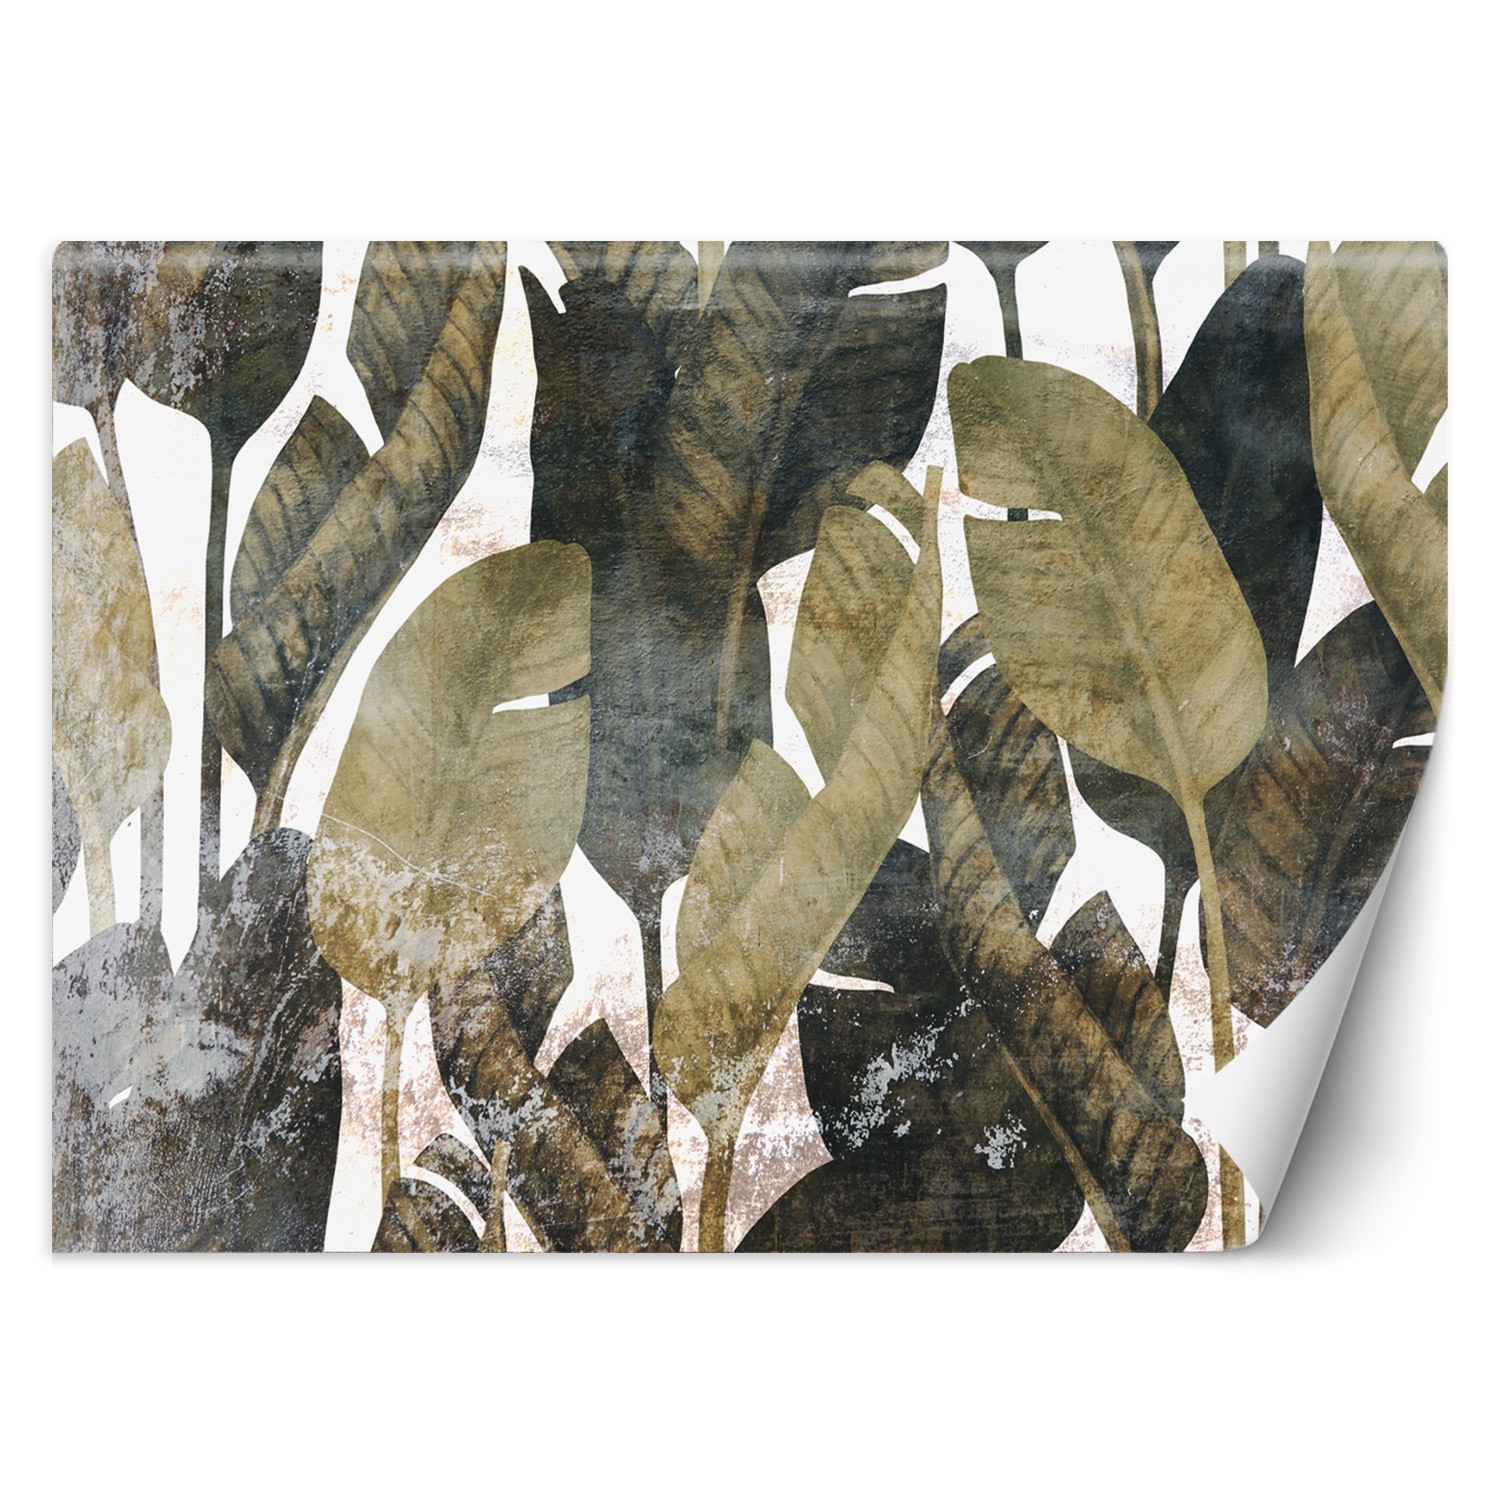 Trend24 – Behang – Bananenblaadjes – Behangpapier – Fotobehang 3D – Behang Woonkamer – 450x315x2 cm – Incl. behanglijm